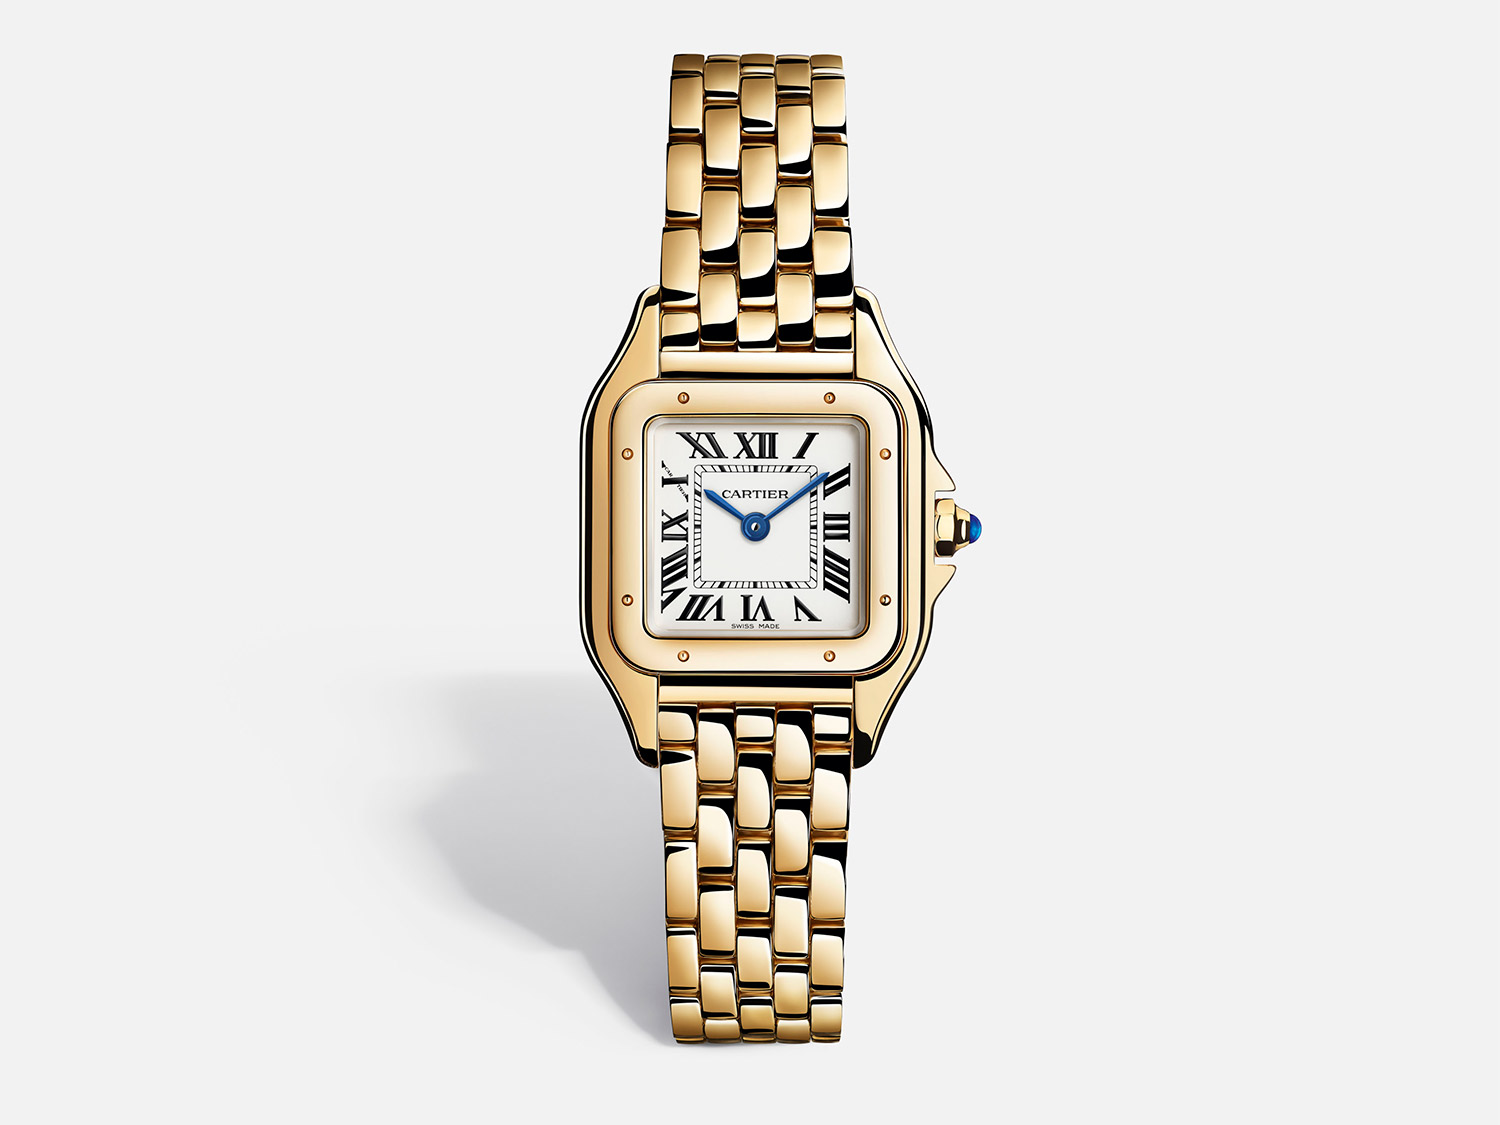 The Panthère de Cartier watch